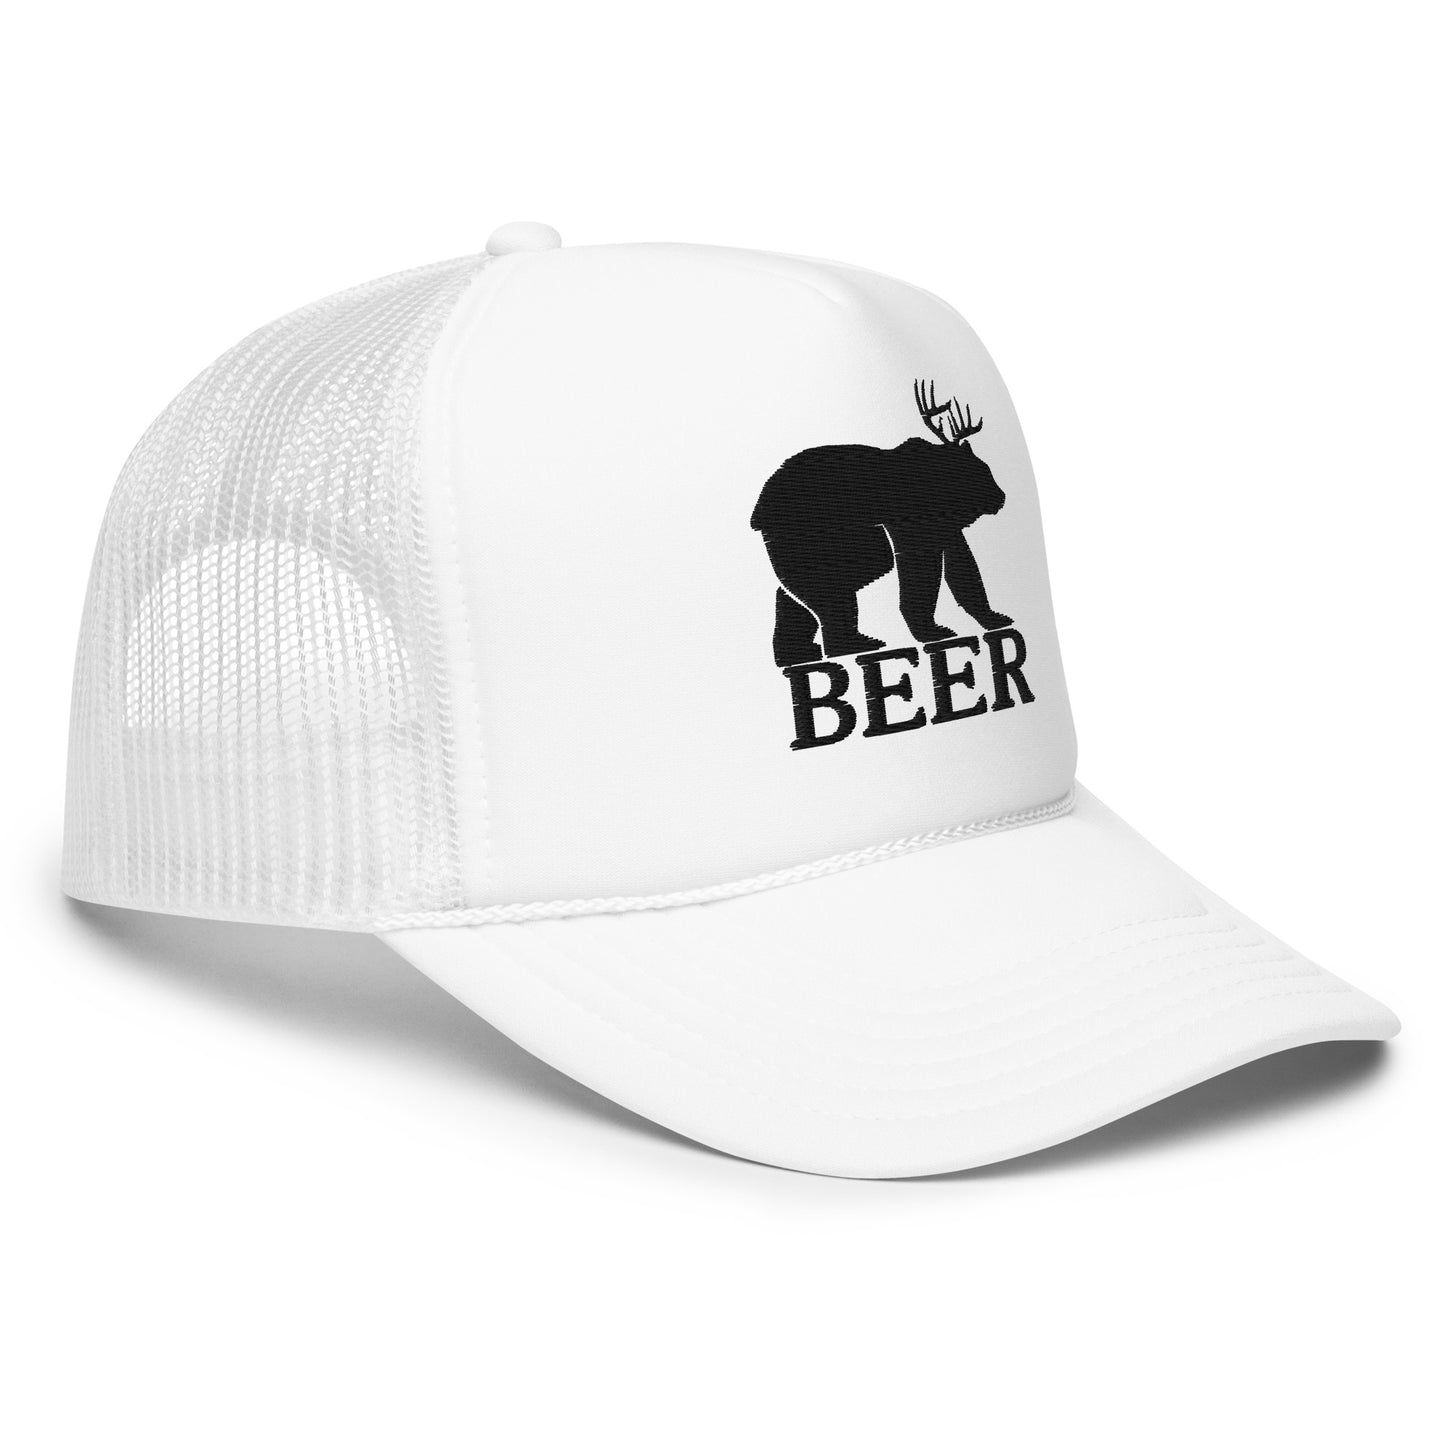 “Beer” Foam Trucker Hat